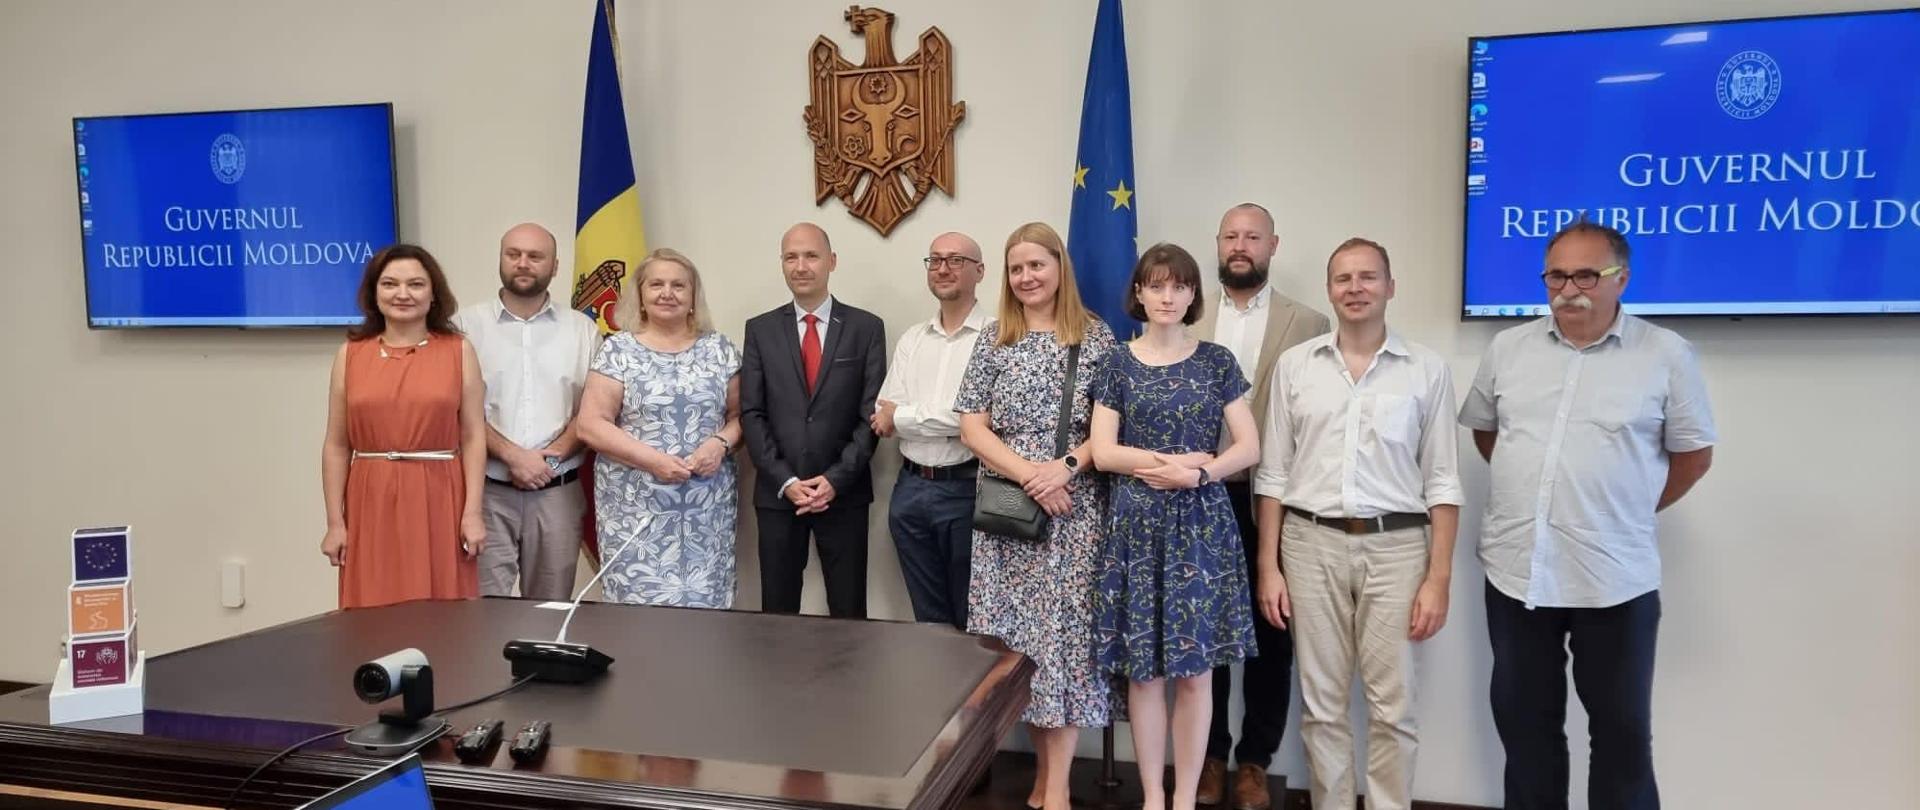 iątkowy poranek delegacja z Polski spędziła w Ministerstwie Edukacji i Badań Republiki Mołdawii